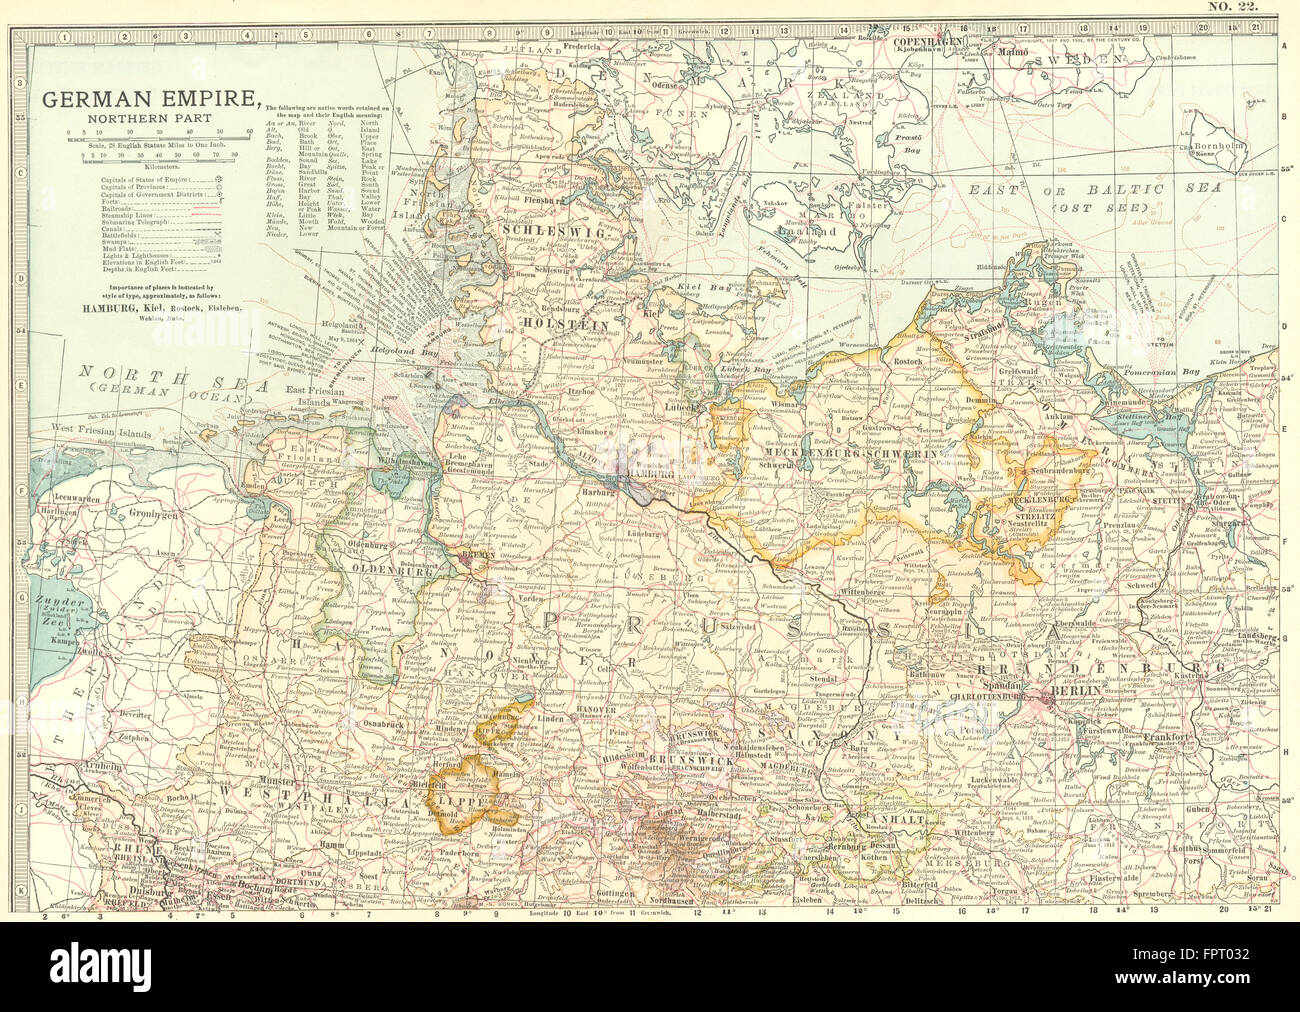 Alemania: Imperio Alemán, al norte, 1903 mapa antiguo Foto de stock